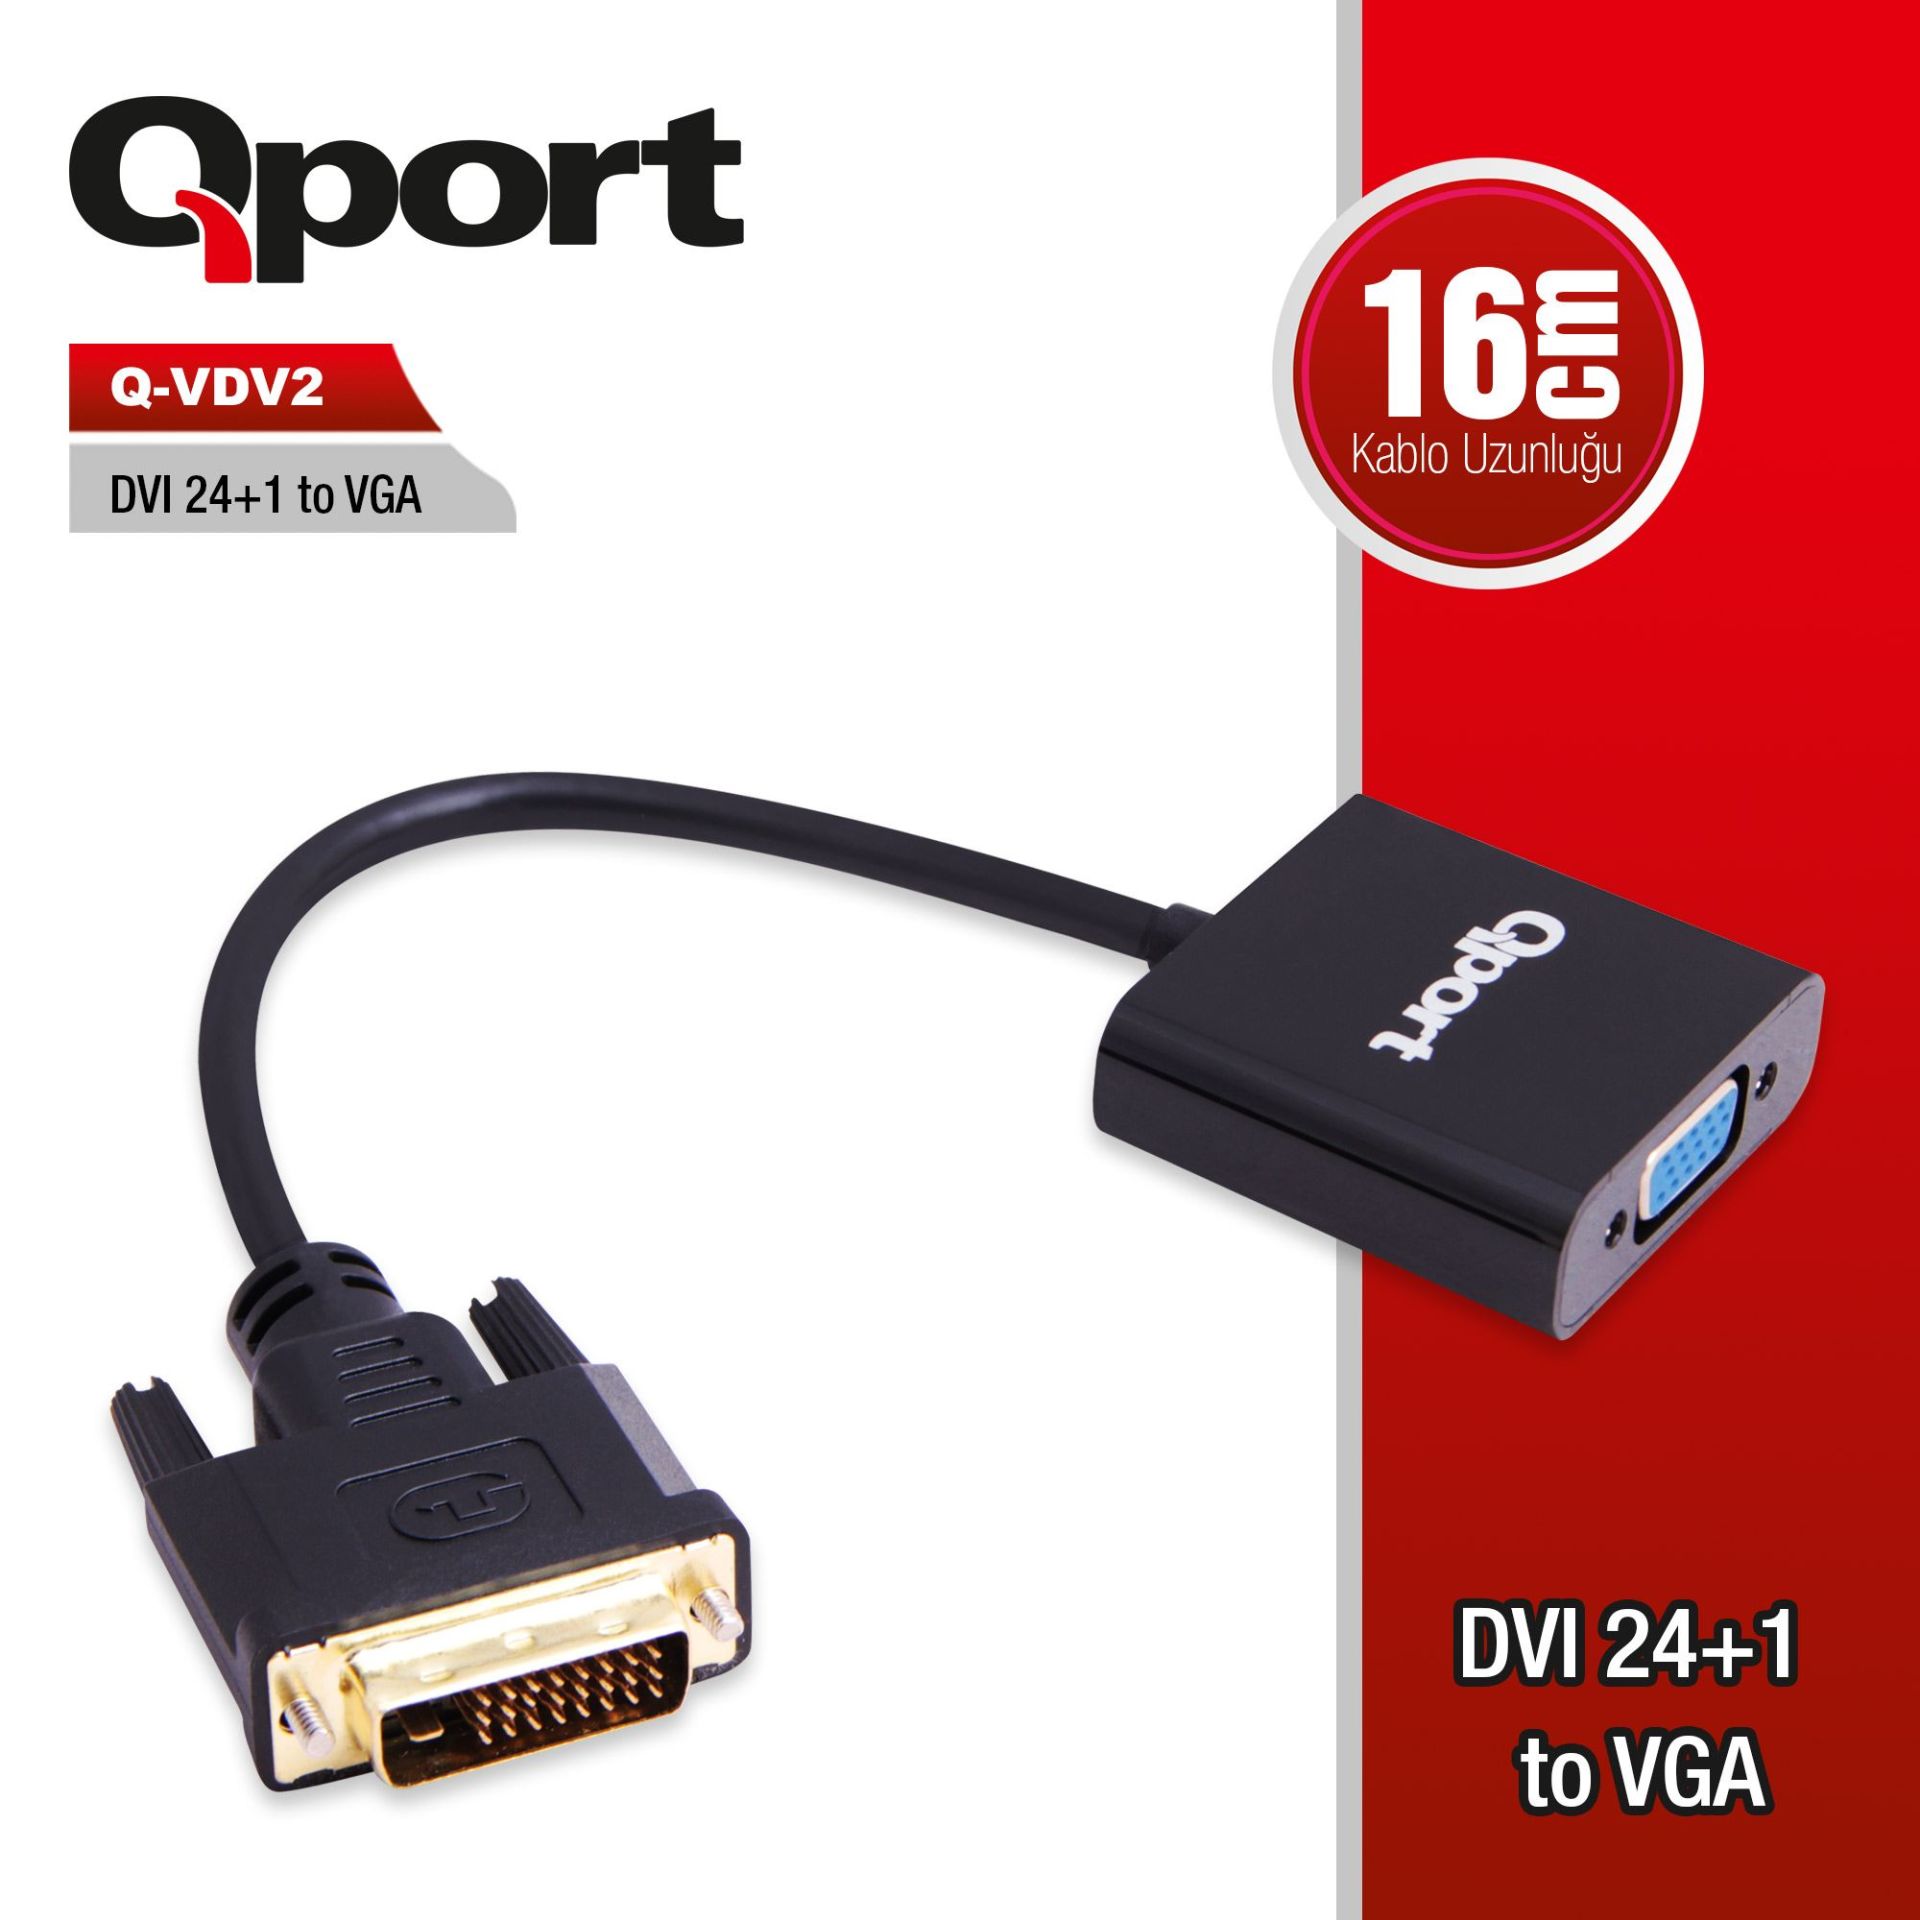 QPORT Q-VDV2 DVI 24+1 TO VGA CONVERTER